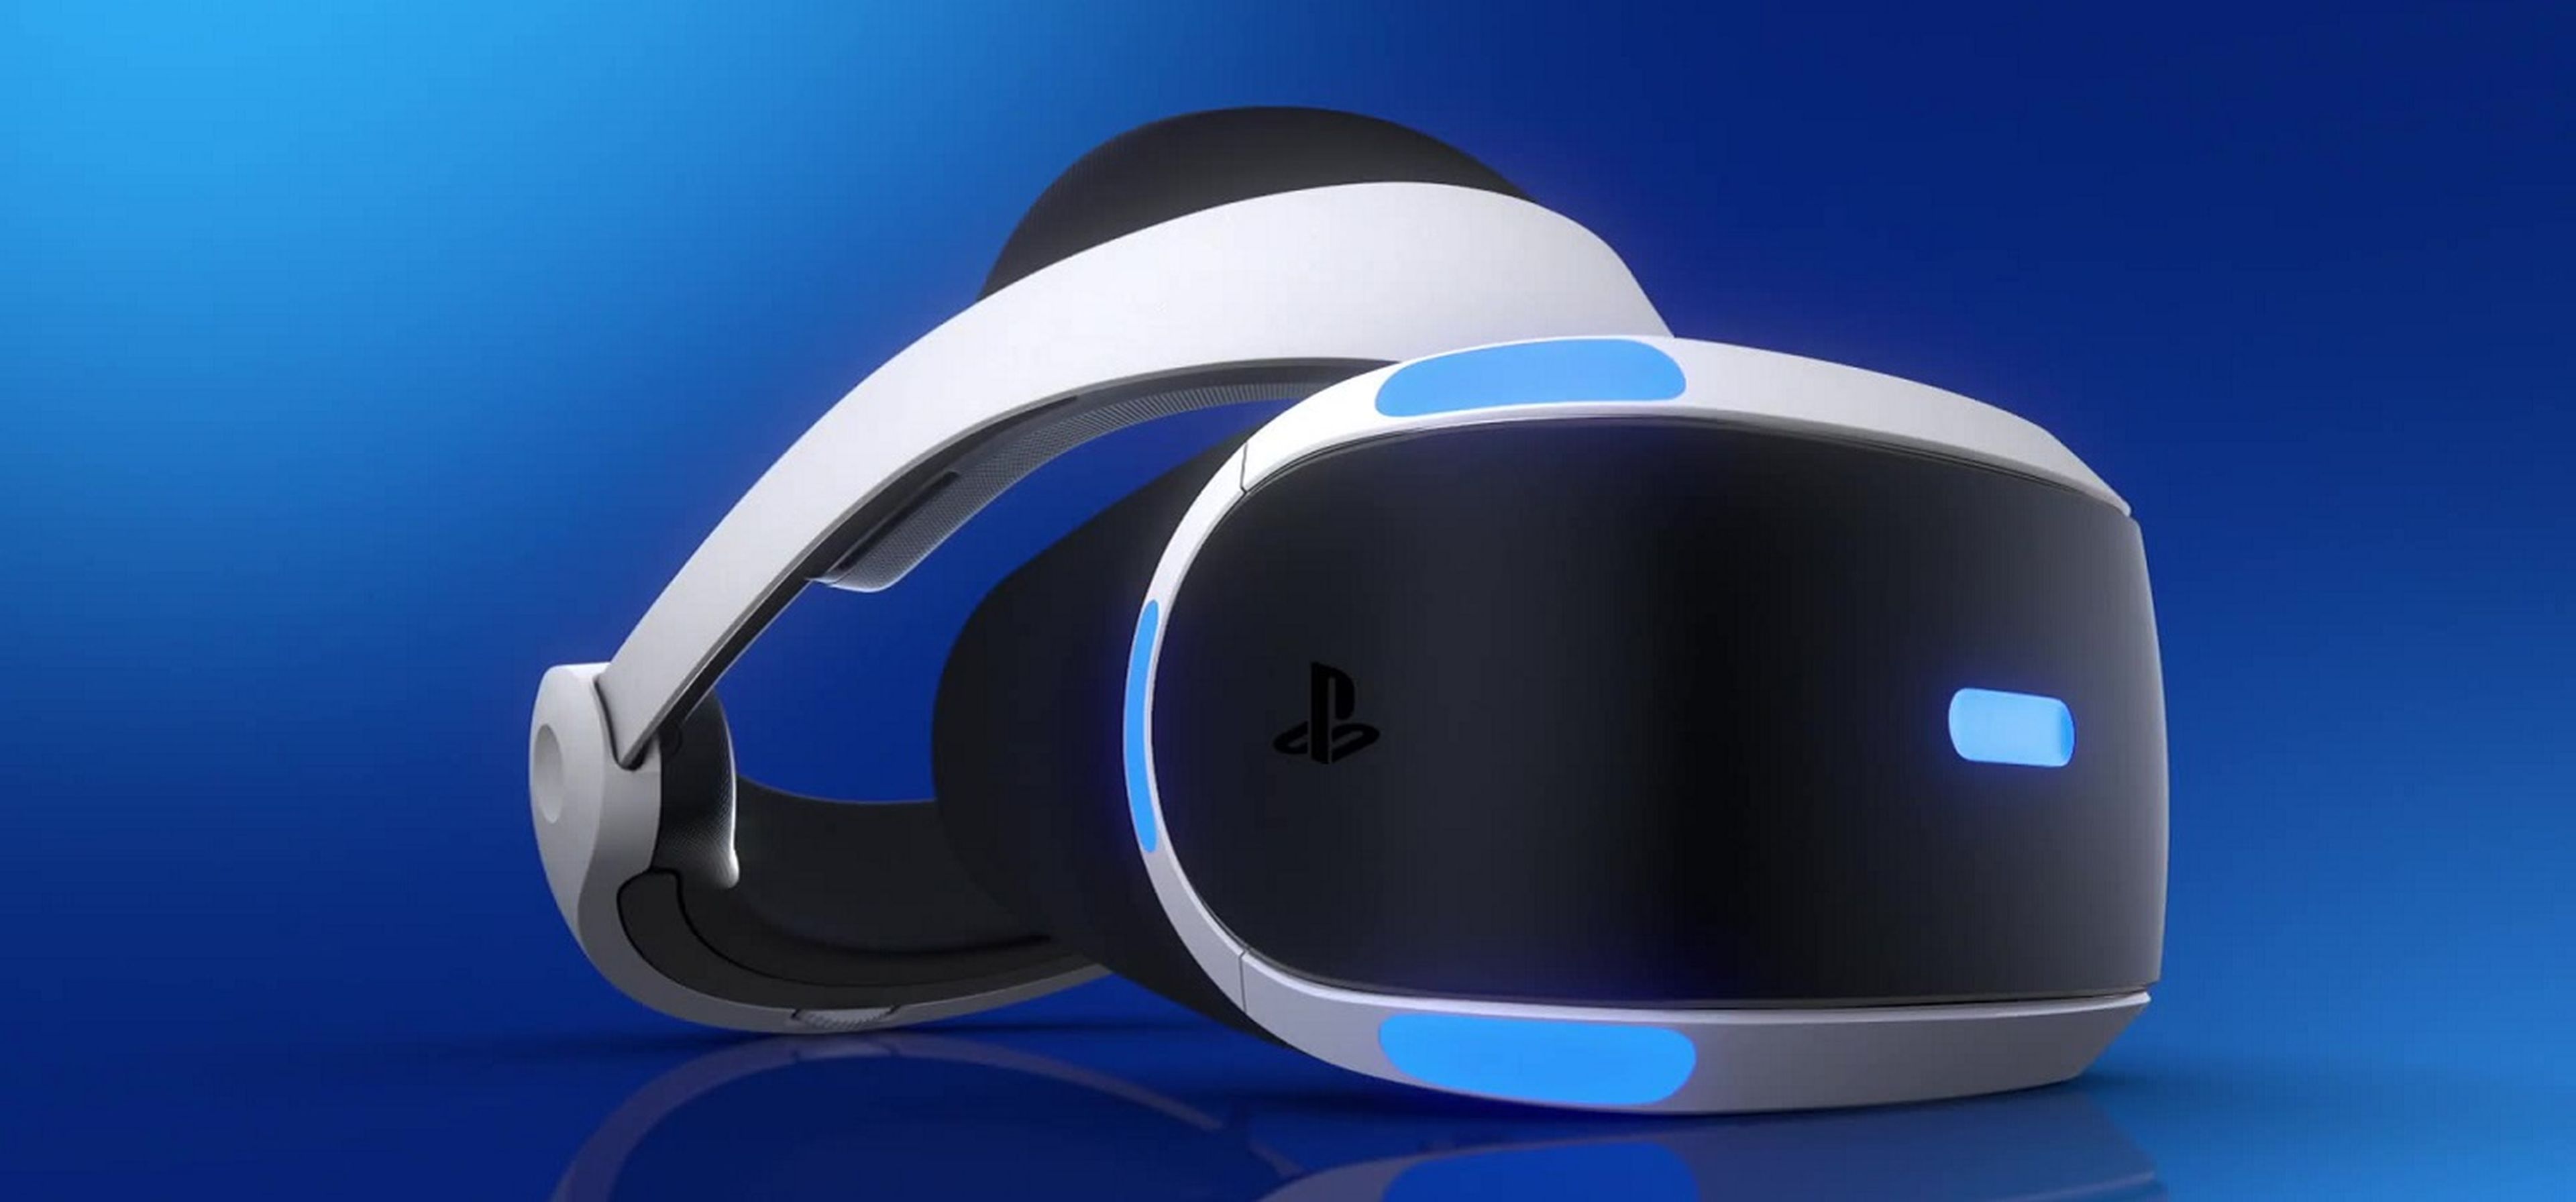 PlayStation VR - Principal